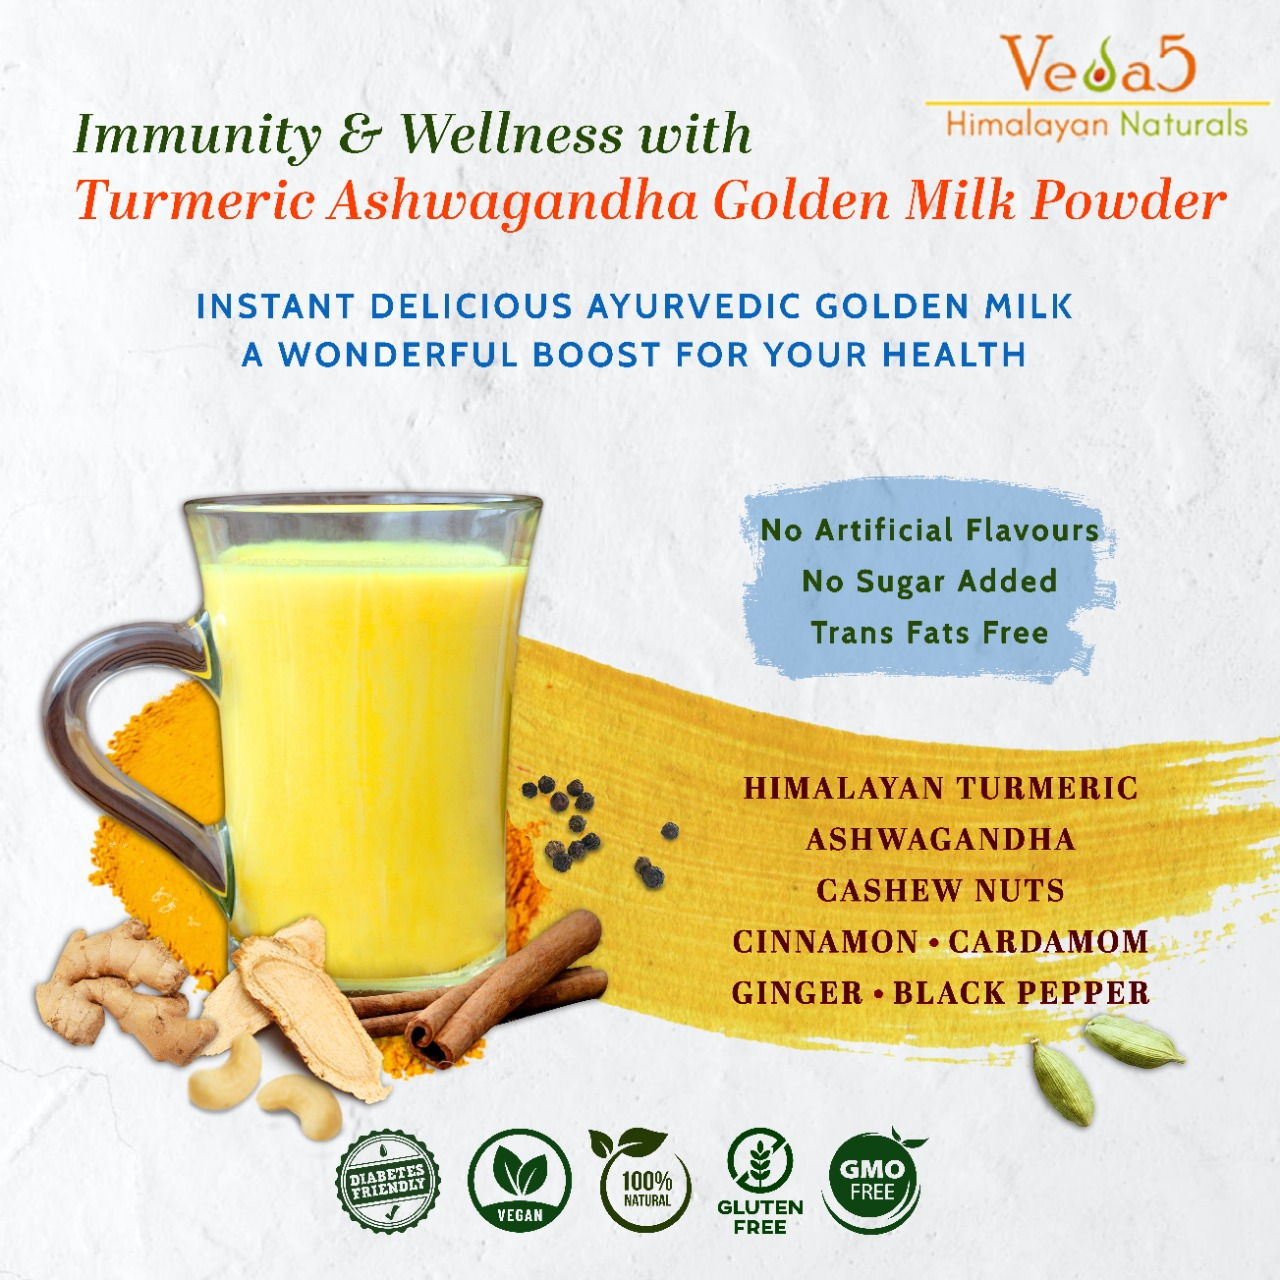 Turmeric Ashwagandha Golden Milk Powder Ingredients Veda5 Himalayan Naturals